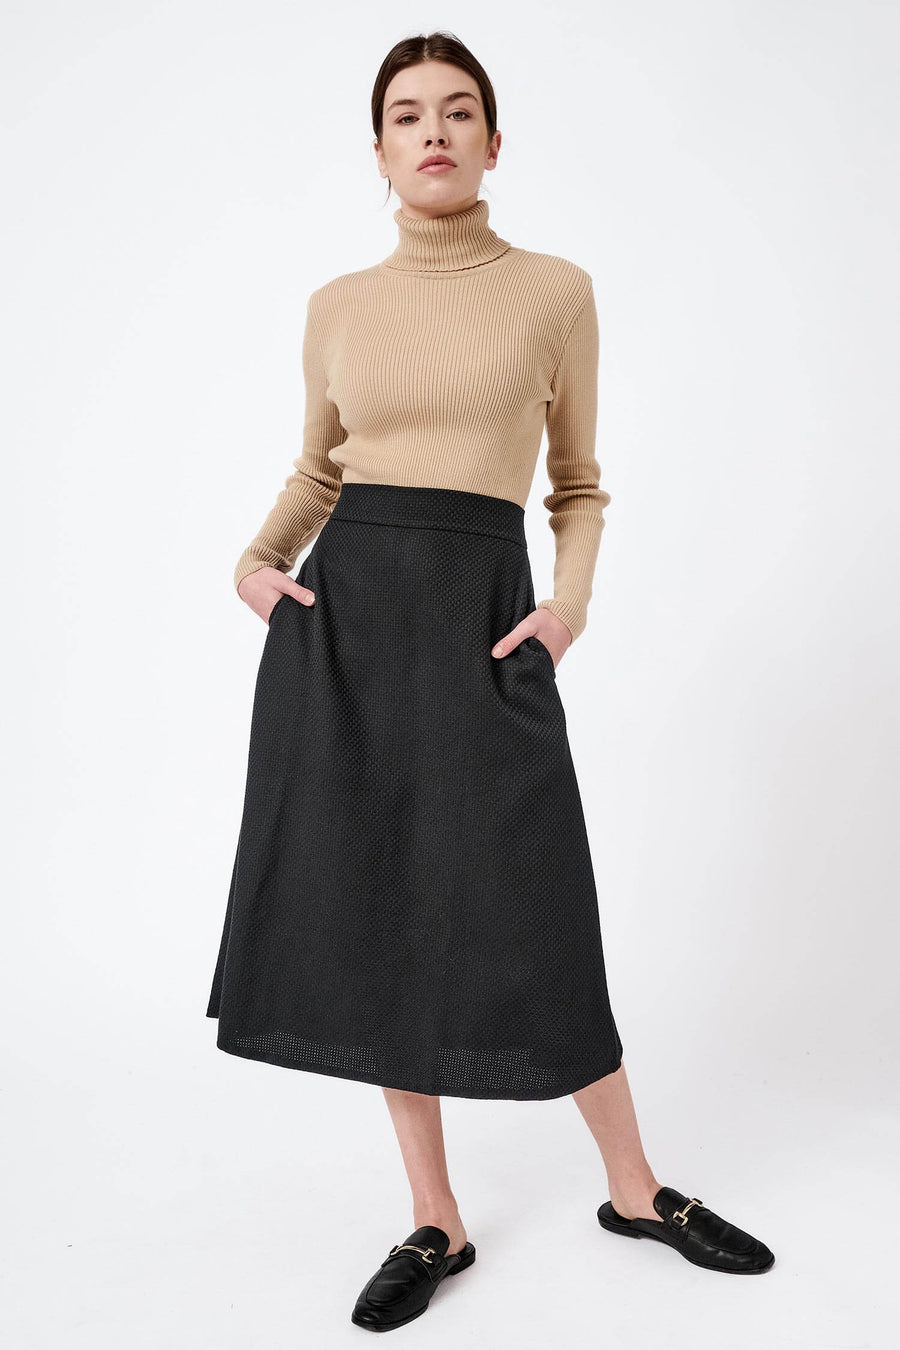 Skirts | Sustainable Organic Women's Clothing | Mila.Vert